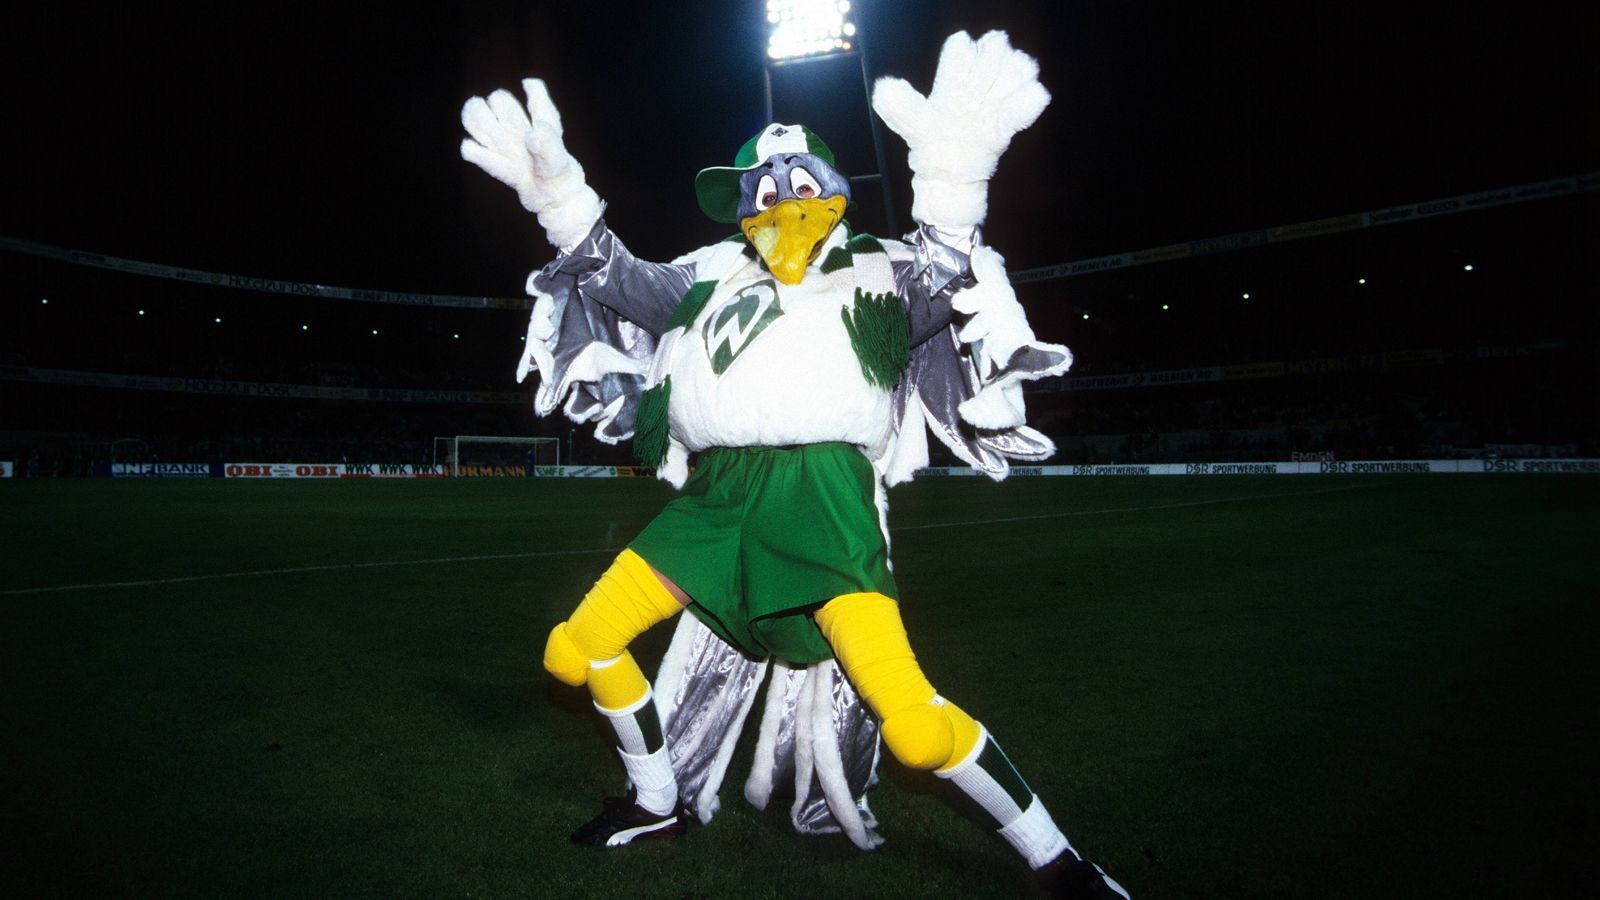 
                <strong>Platz 2: SV Werder Bremen - Werdi</strong><br>
                Werdi schafft die Vize-Meisterschaft, obwohl die sympathische Möwe seit Anfang des Jahrtausends gar nicht mehr aktiv ist. Ex-Profi Arie van Lent versteckte sich bei einem Fan-Fest 1994 einst in dem Kostüm, fortan war Werdi aus dem Weserstadion nicht mehr wegzudenken. Eingefleischte Fans wünschen sich bis heute ein Comeback, wir unterstützen das! 
              